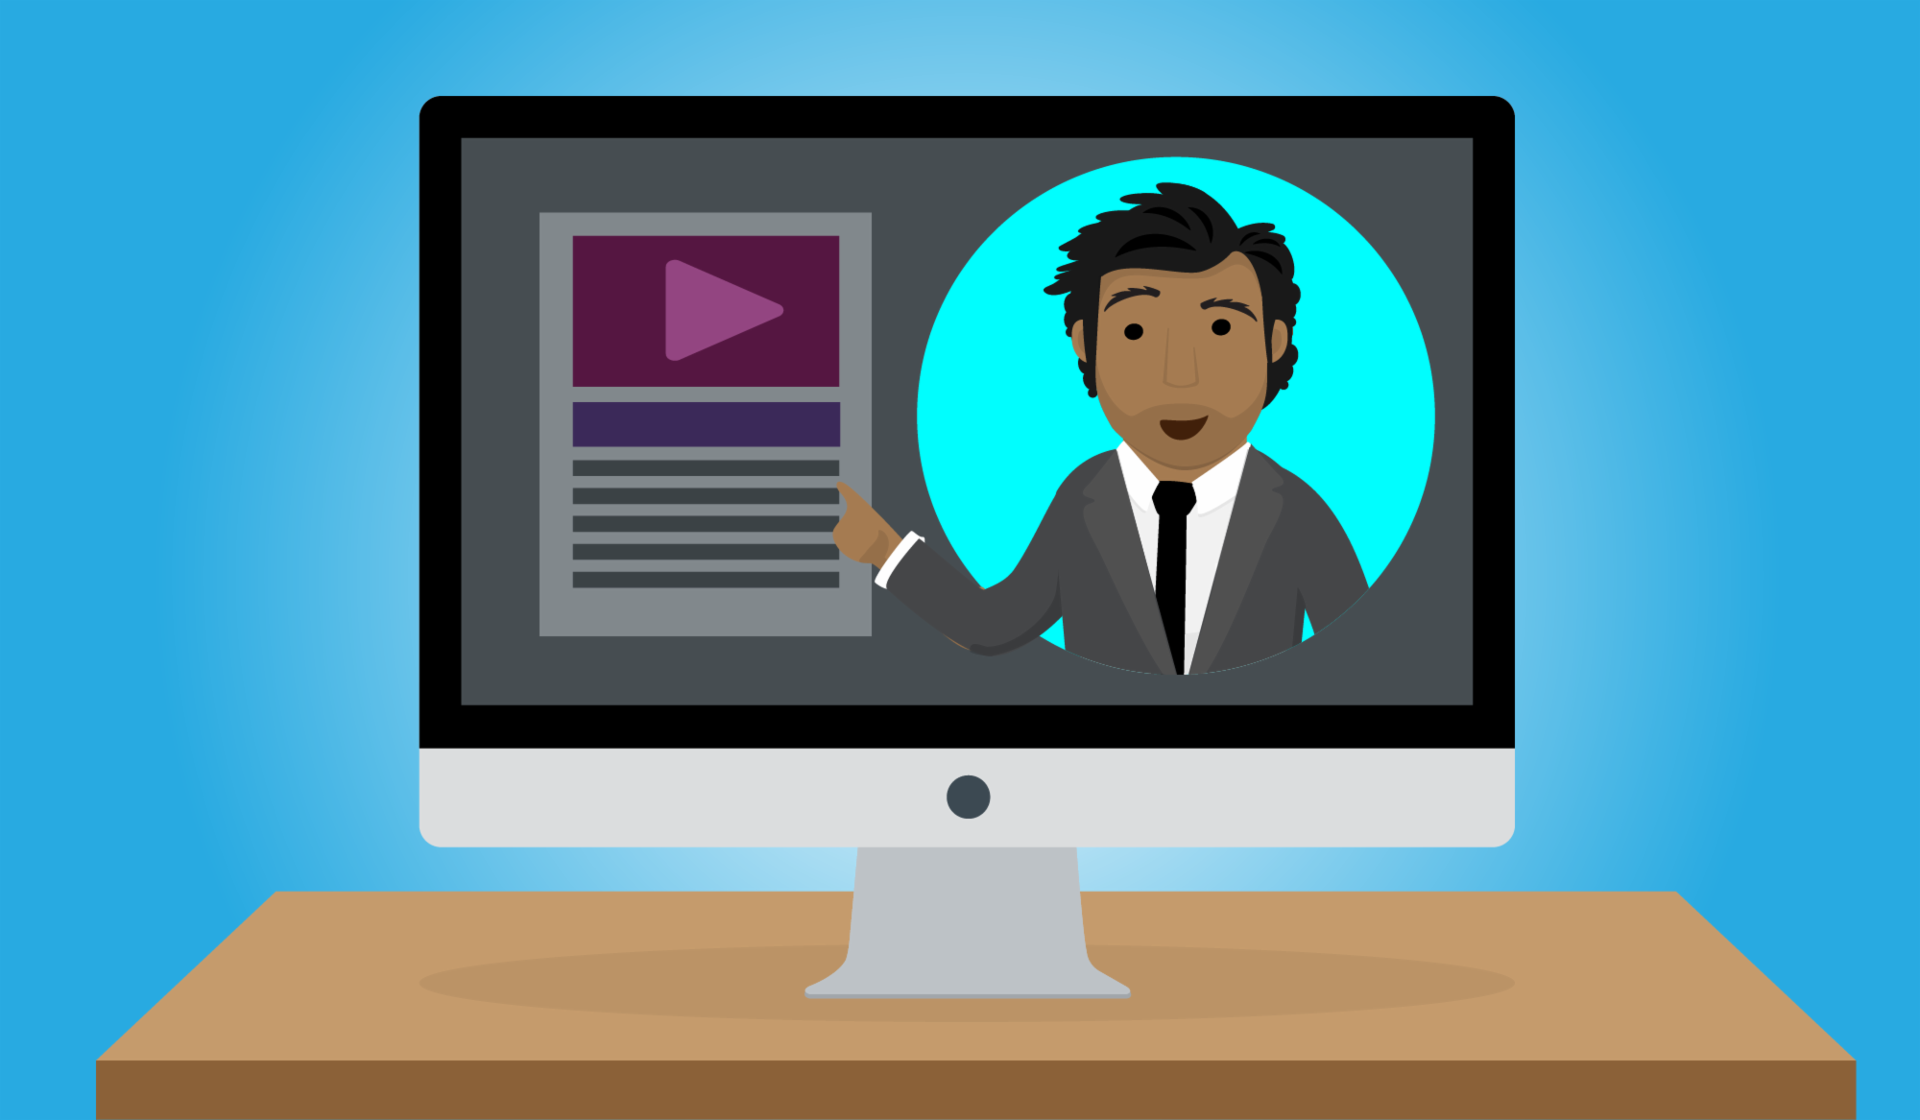 Hablar de tu experiencia en un video puede ayudar a que te destaques en una oferta laboral.